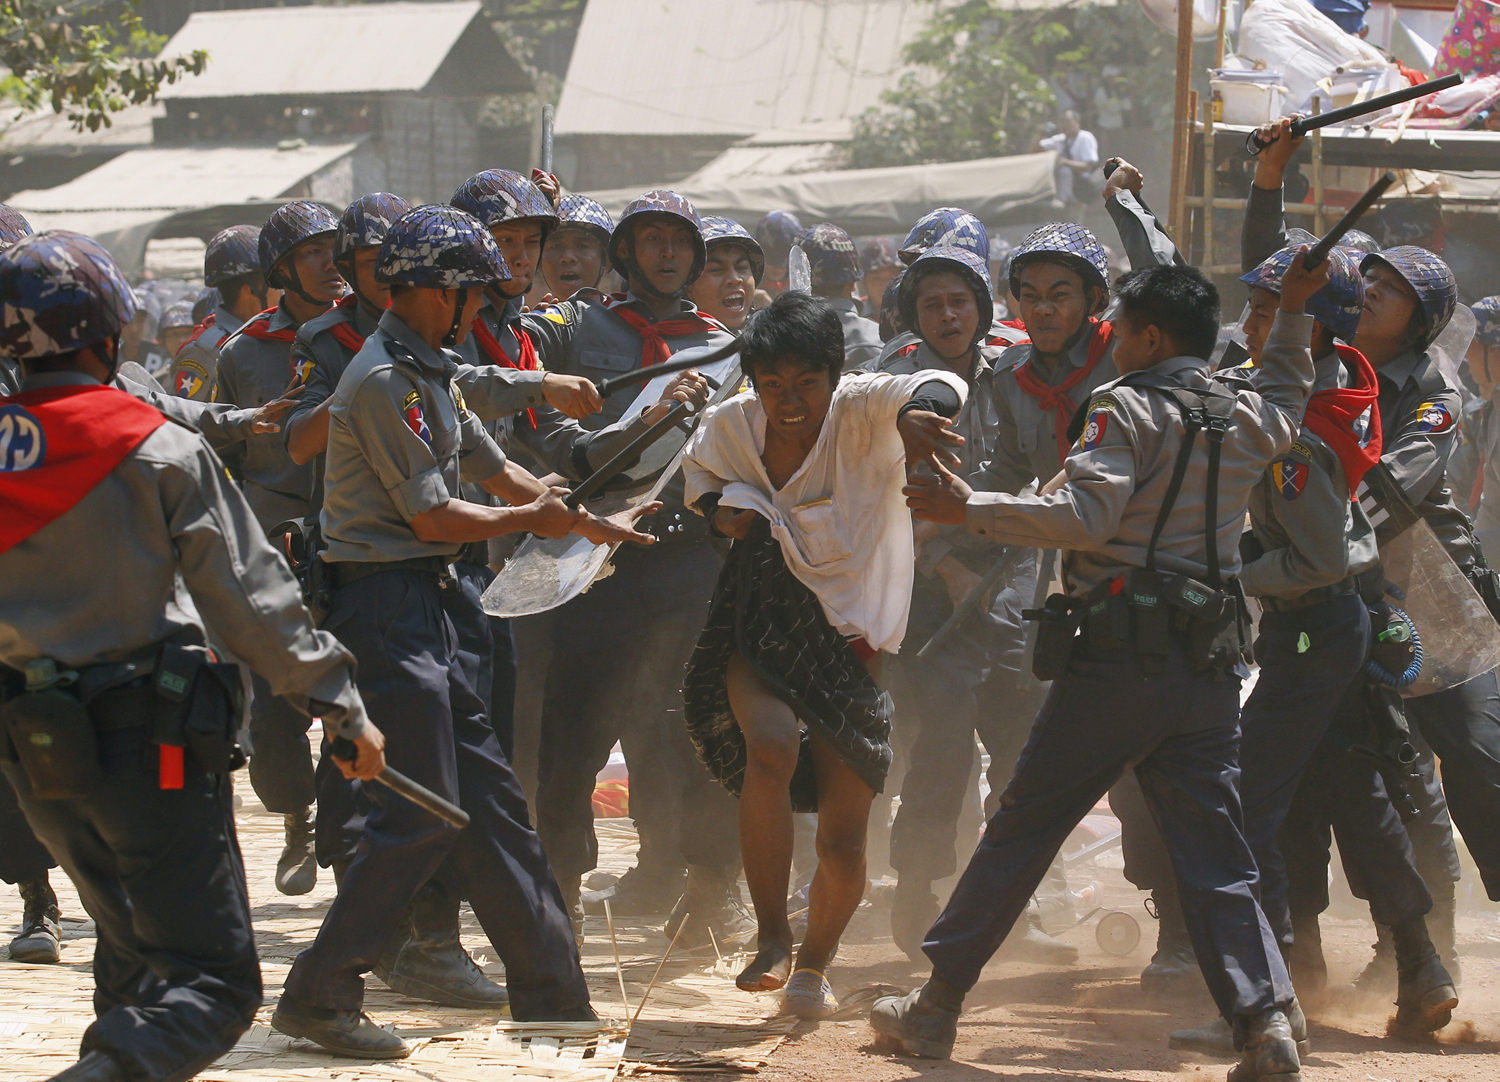 Kebrutalan junta militer Myanmar dalam memperlakukan aksi demonstrasi rakyat setempat. (Foto: times)